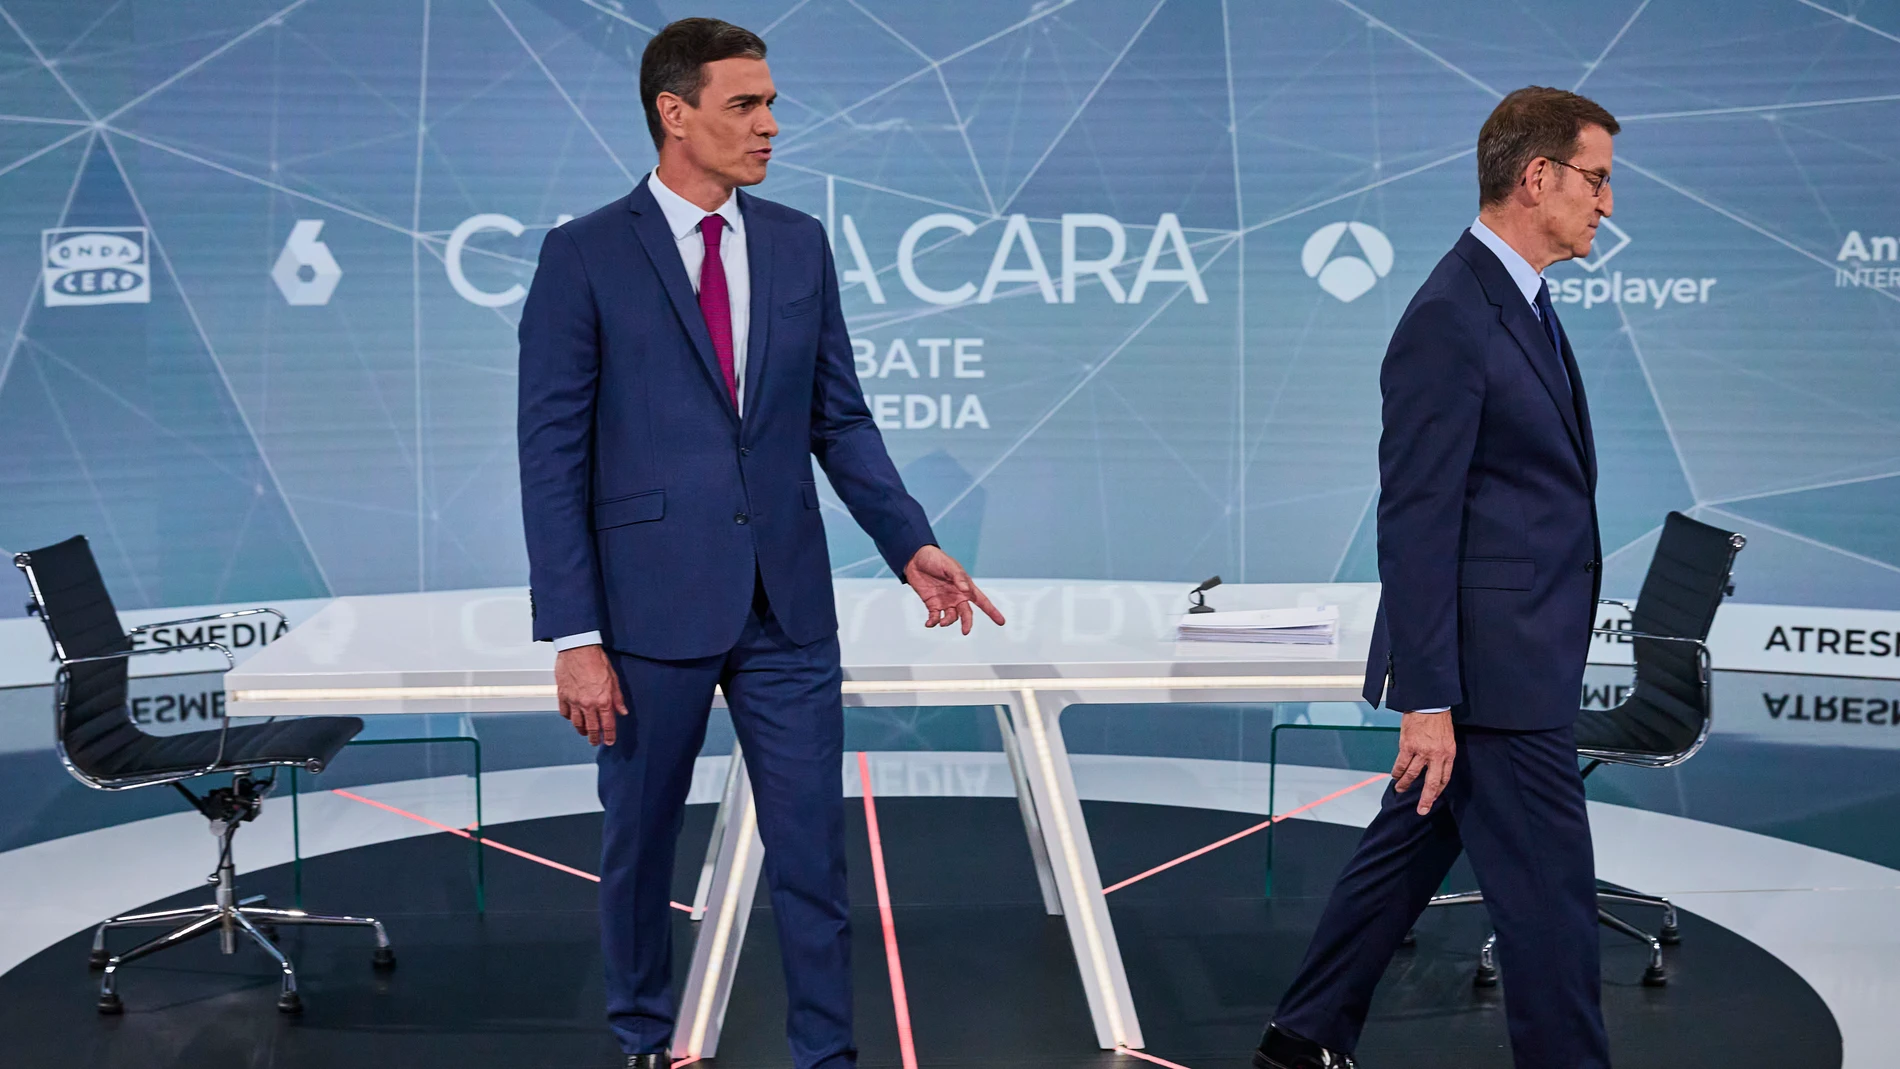 Cara a cara Electoral en Atresmedia entre Alberto Núñez Feijoo y Pedro Sánchez.